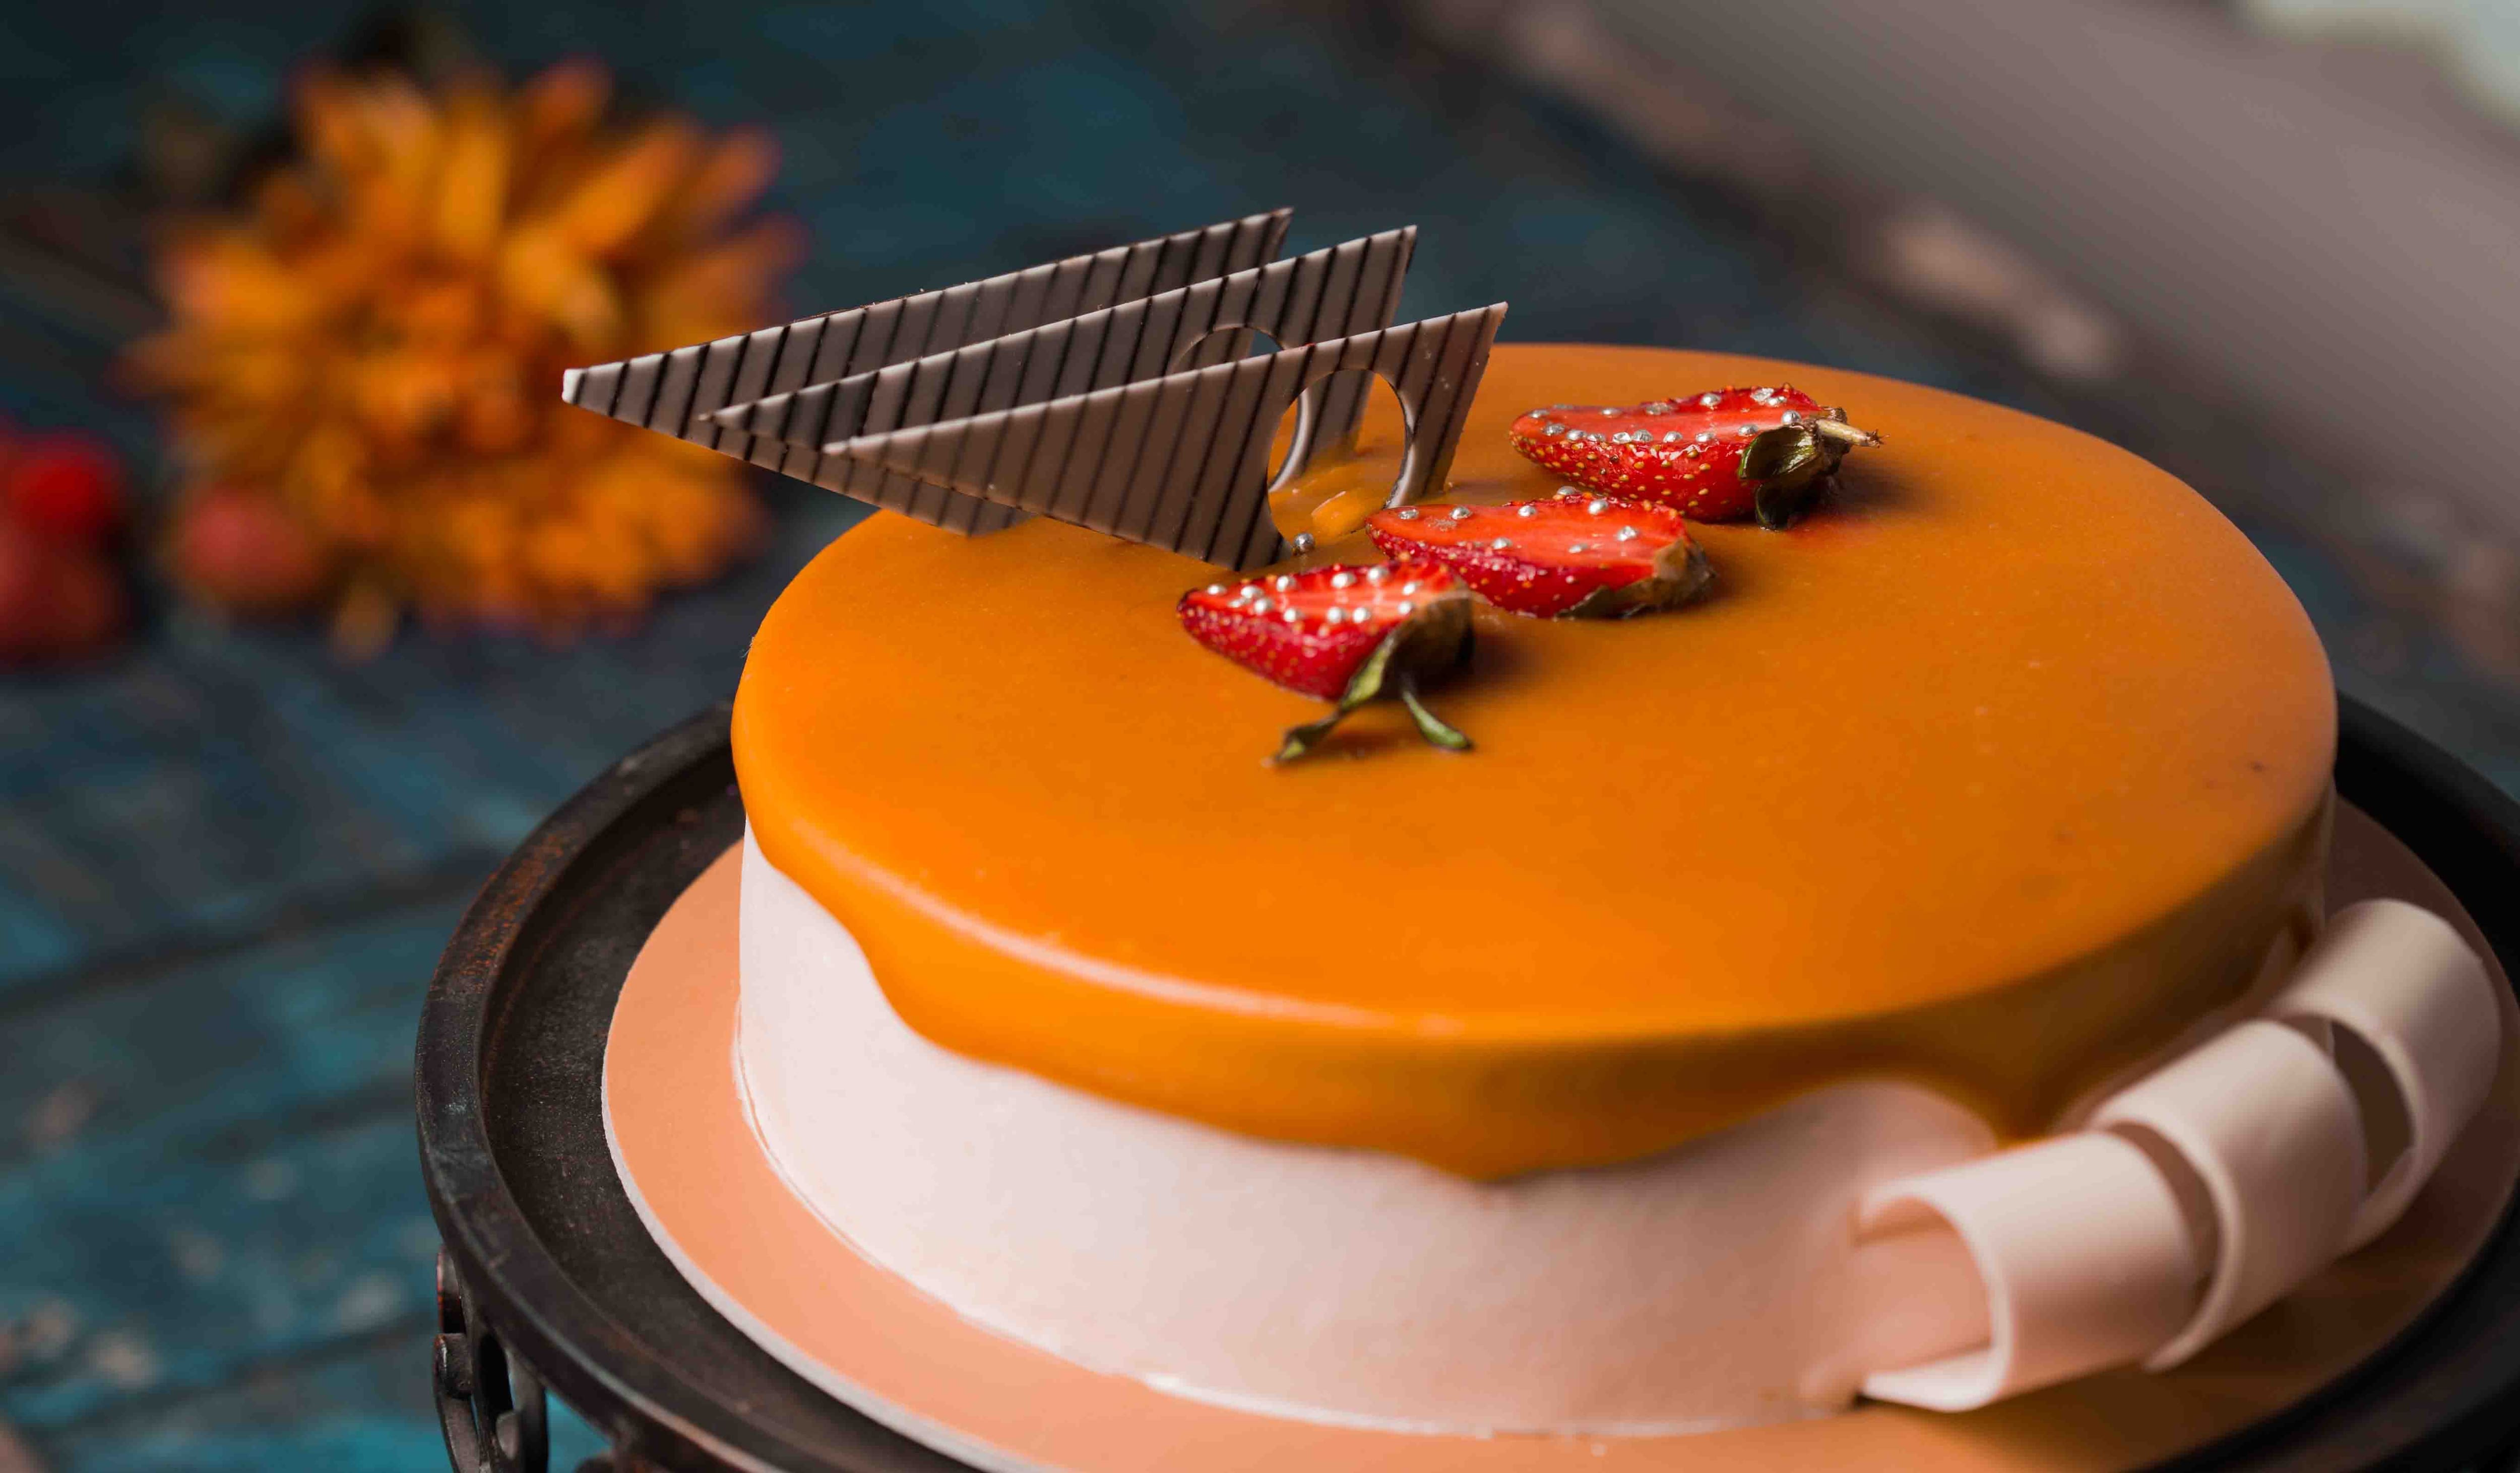 Monginis Cake Shop Menu Mumbai | Cakes Pastries Savouries Menu